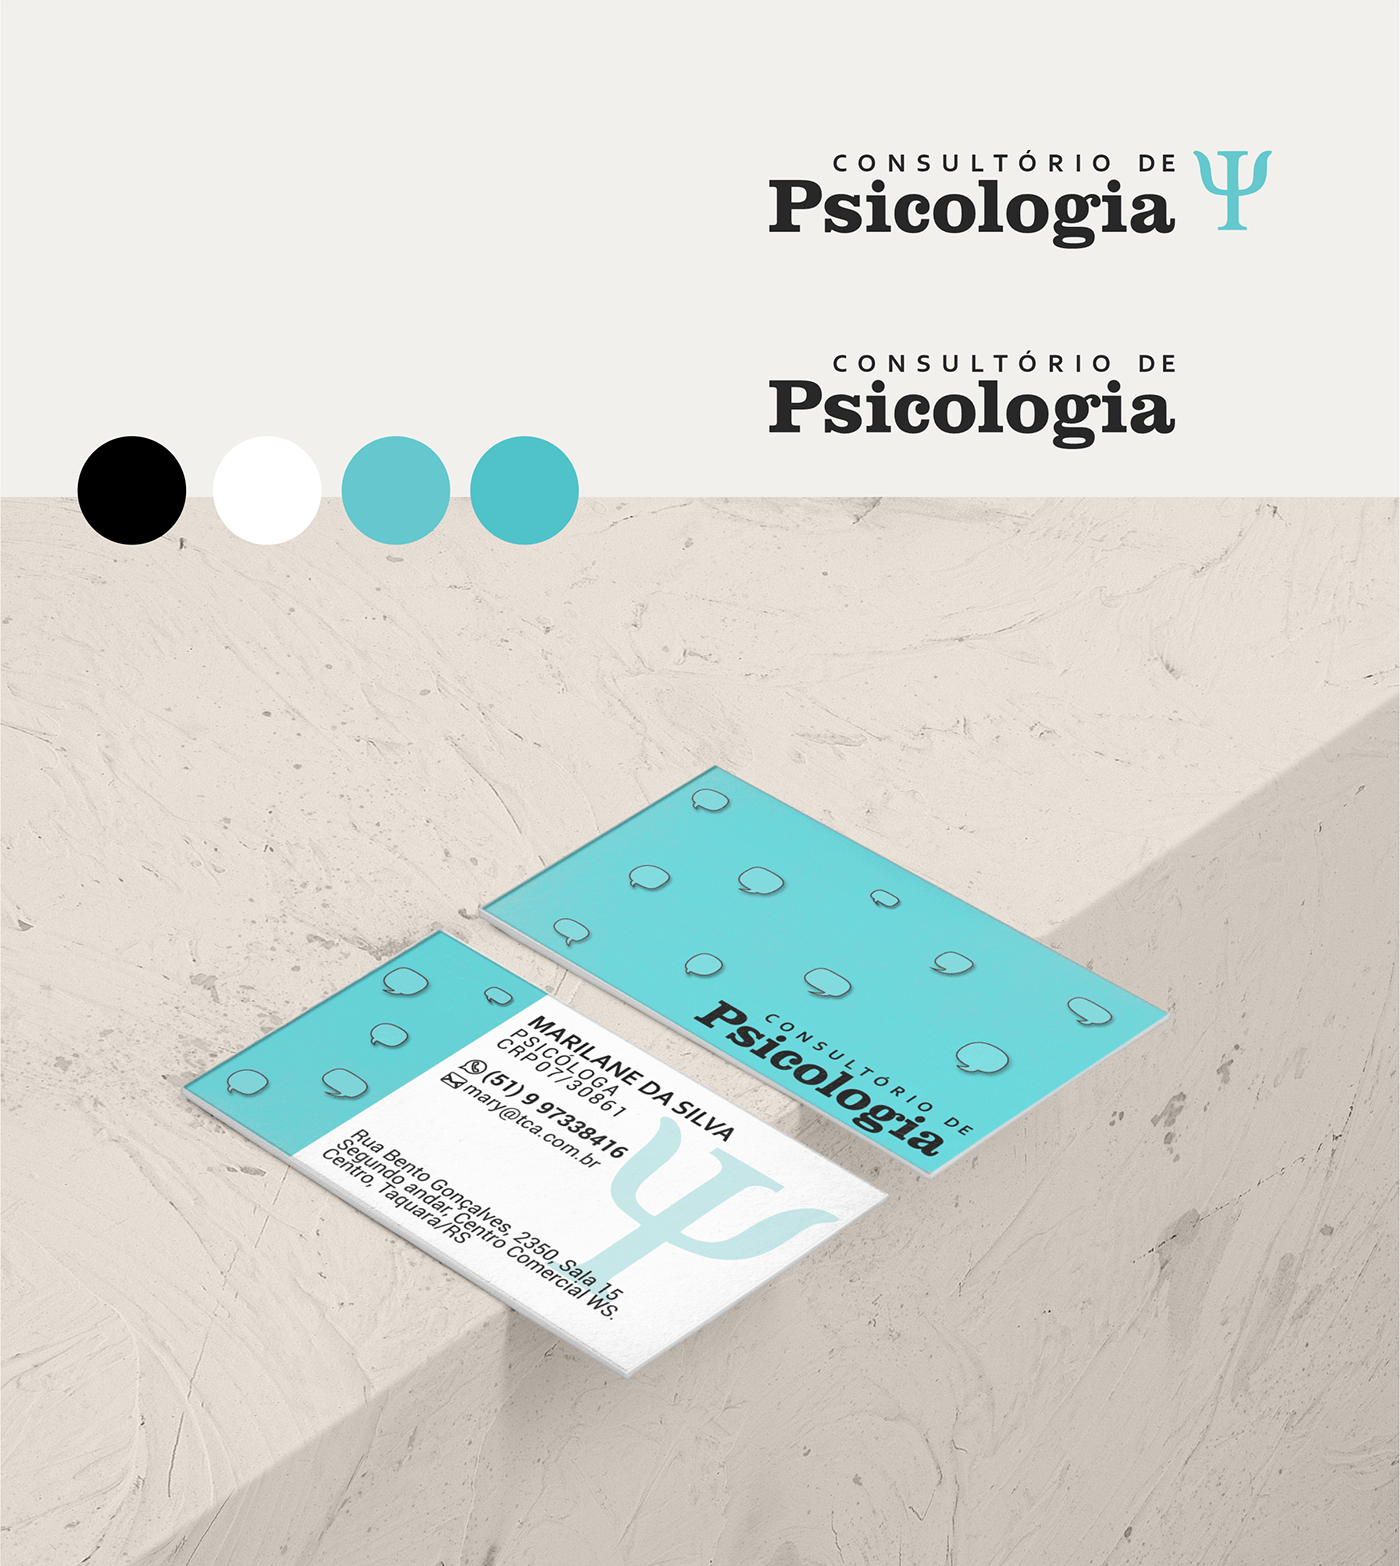 psicologia consultório psicologo criação identidade visual cartão de visitas marca